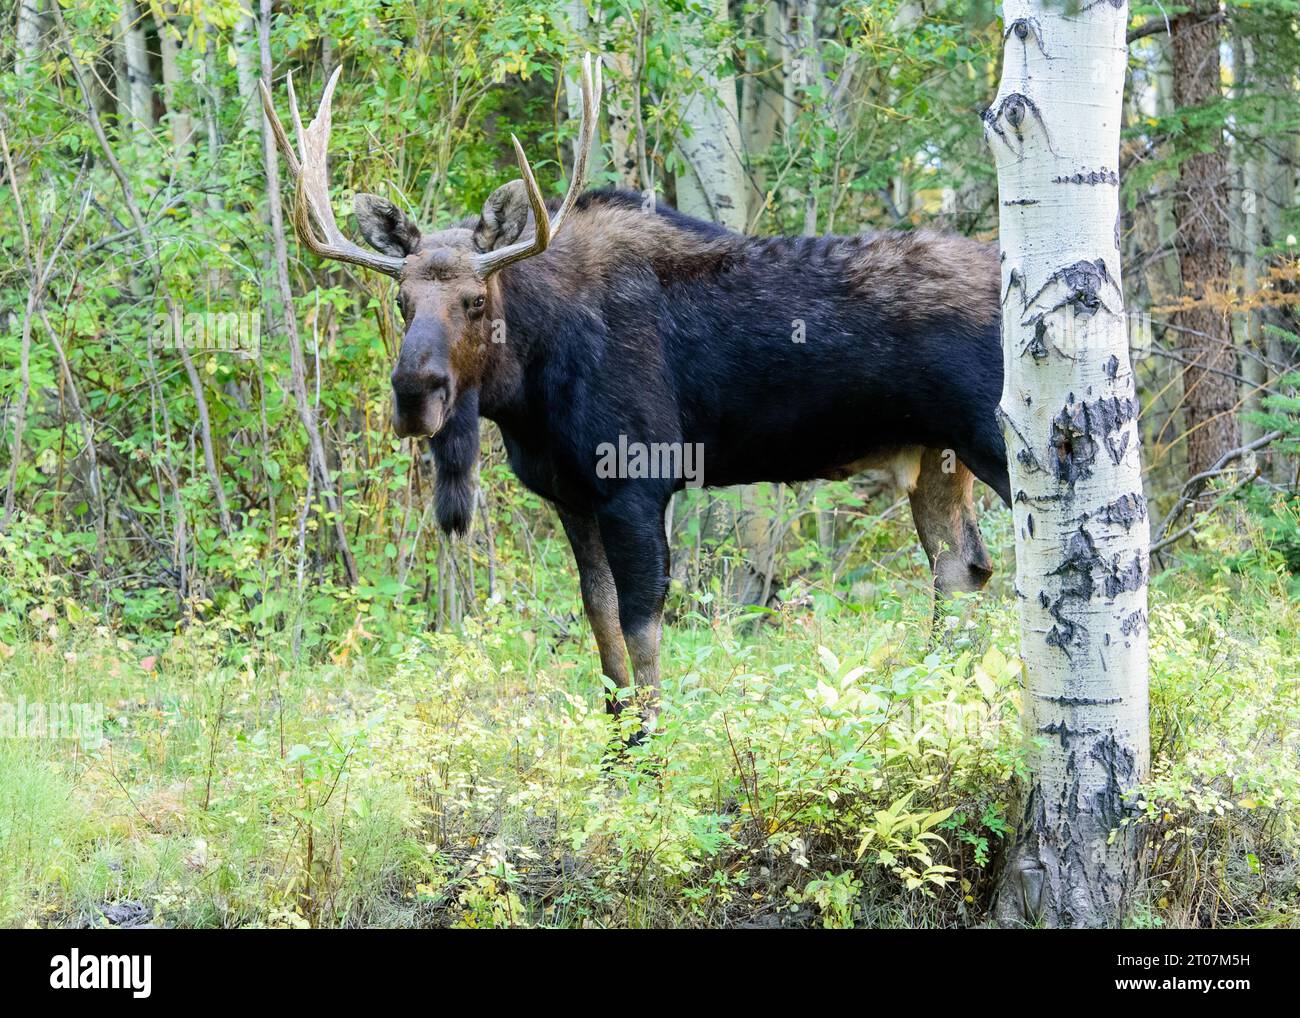 Bull moose in rut Stock Photo